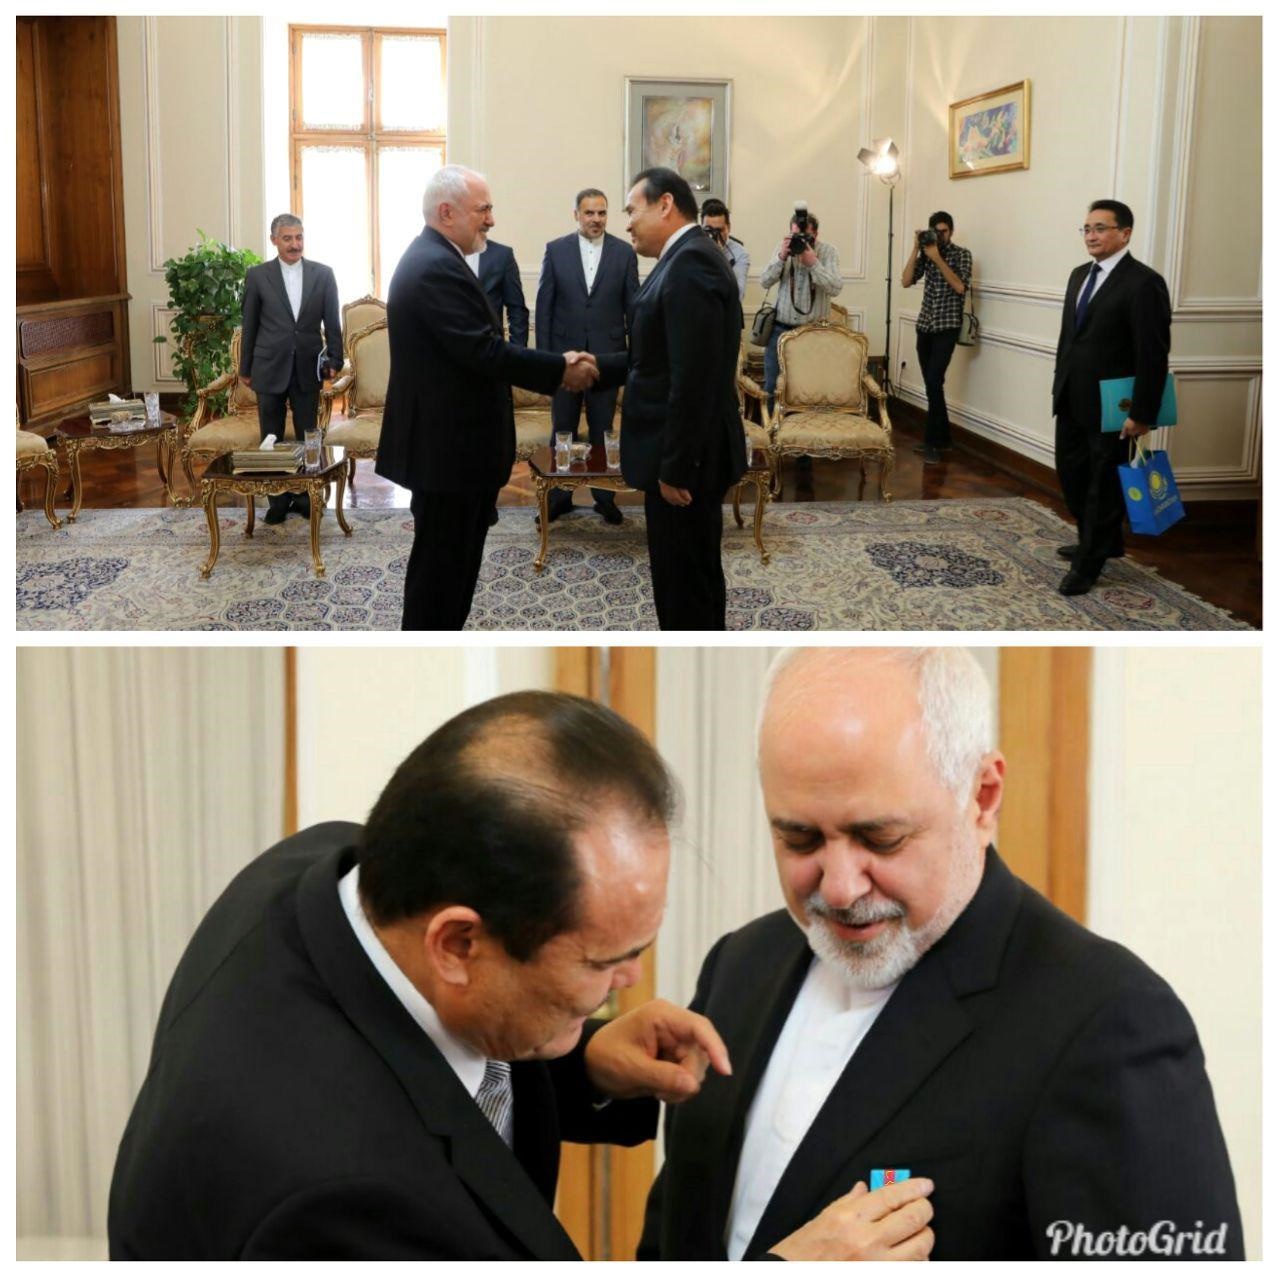 در پایان نیز سفیر قزاقستان در پایان ماموریت خود در کشورمان با وزیر امور خارجه دیدار و خداحافظی کرد.